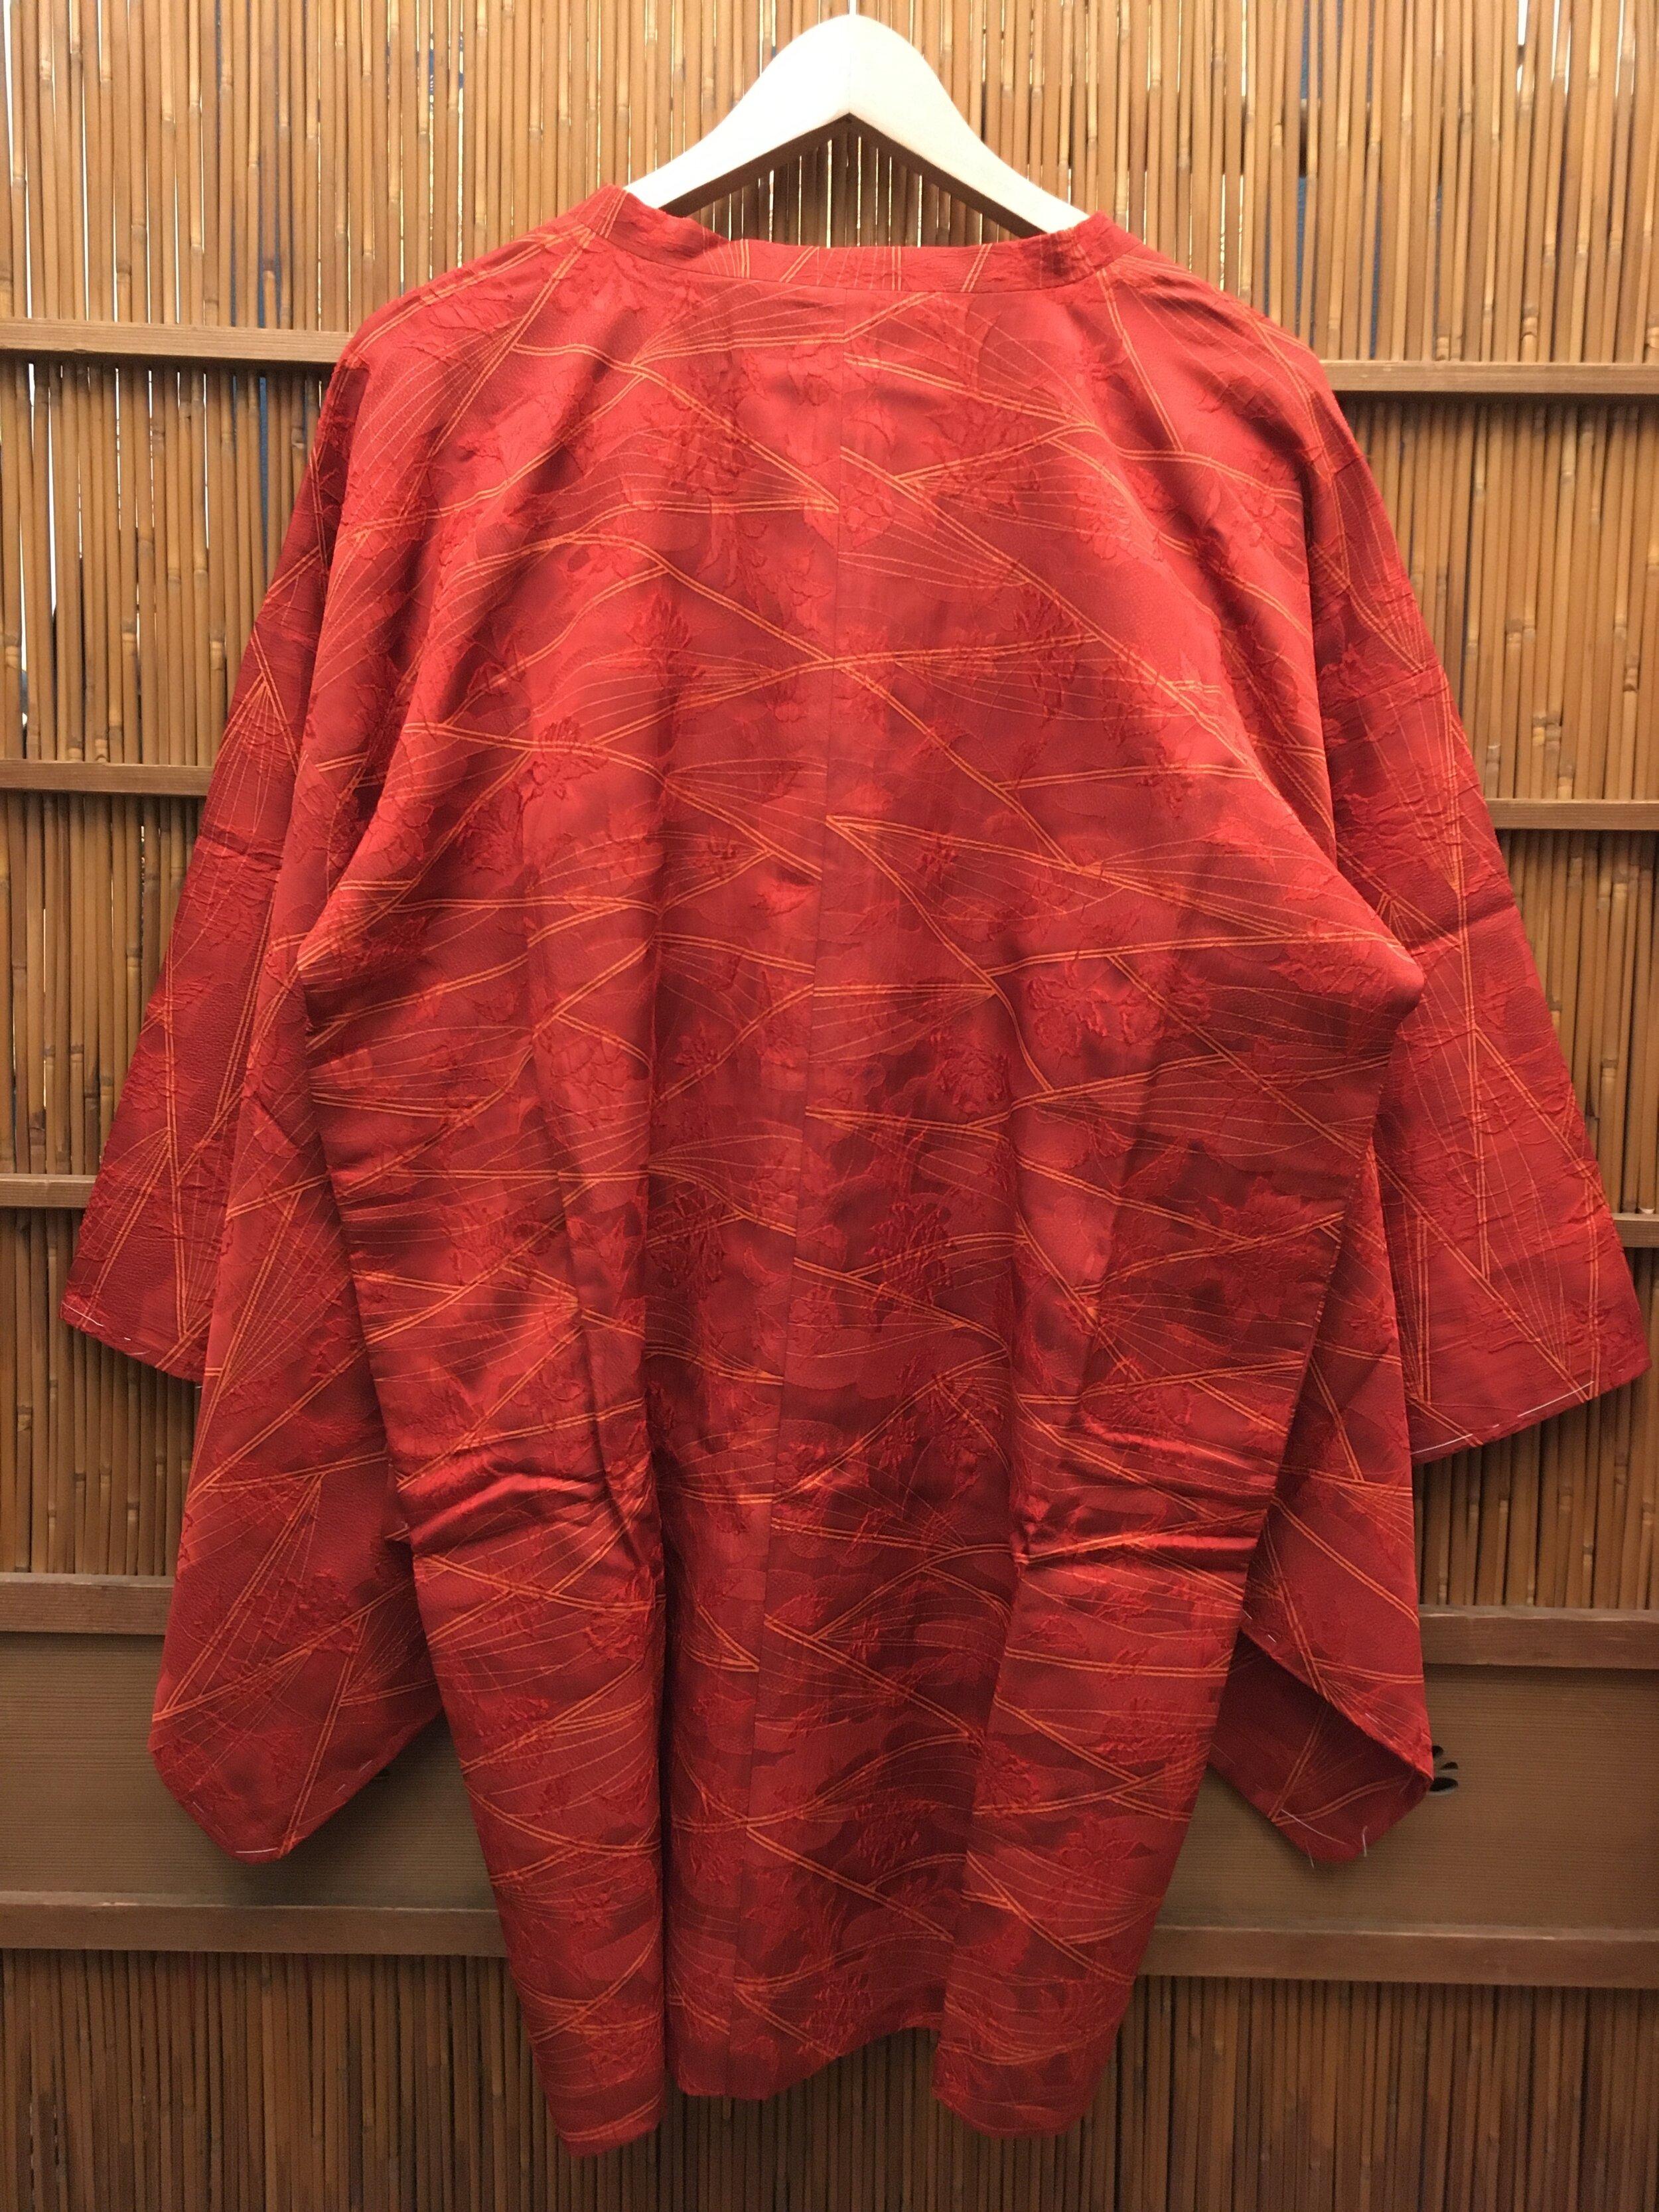 Dies ist eine dünne Schicht, die wir auf dem Kimono tragen. Es ist für den Frühling. 
Diese Art von Mantel wird auf Japanisch Michiyuki genannt.
Dieser Mantel wurde in Japan in den 1980er Jahren in der Showa-Ära